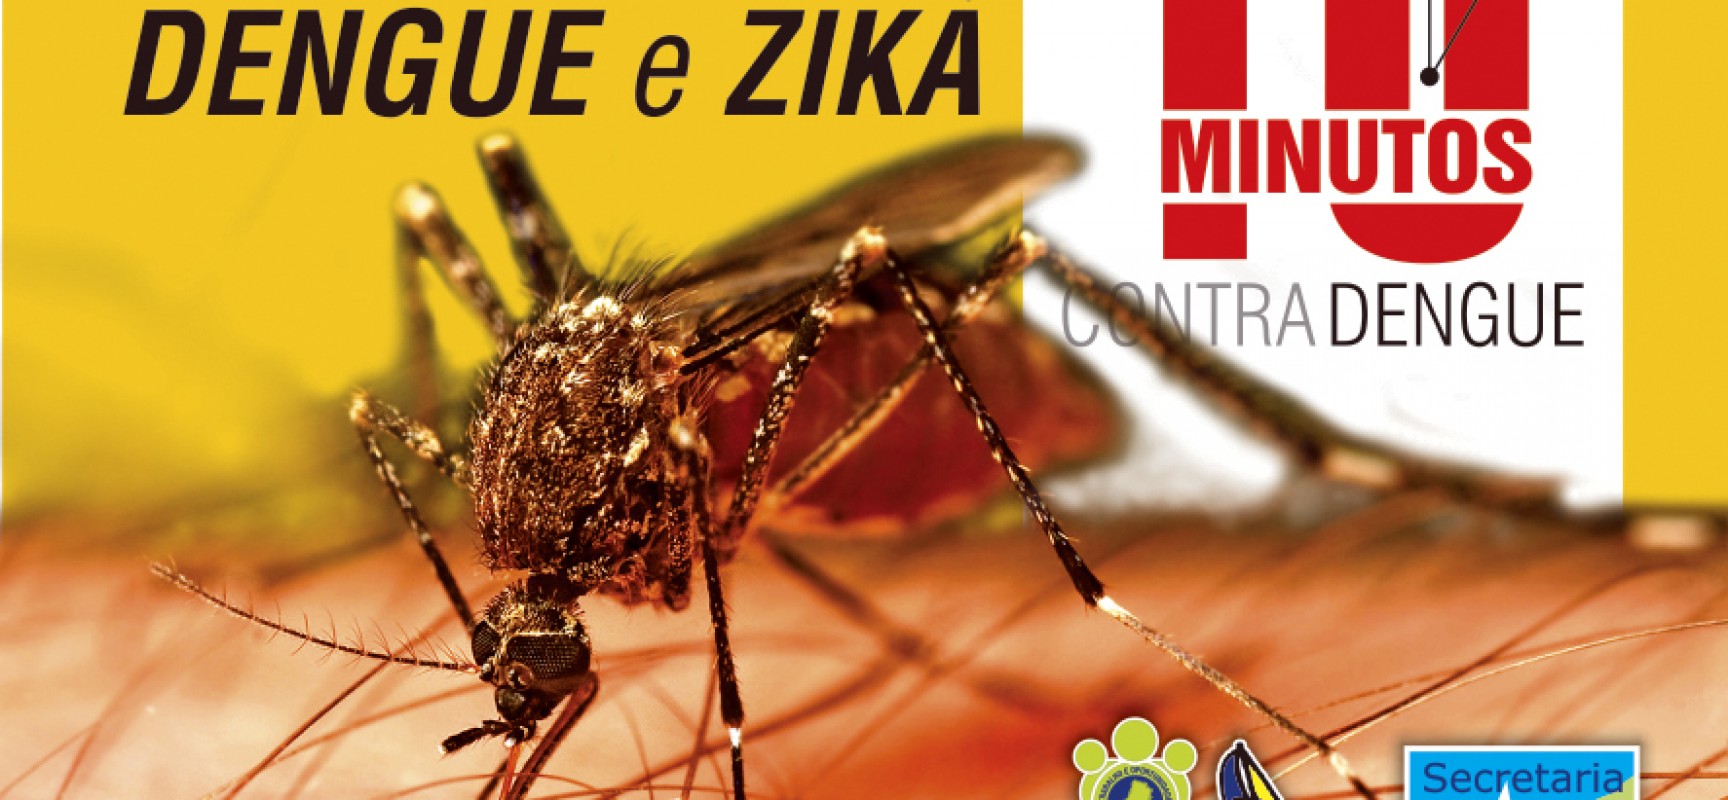 Prefeitura de Ilhabela realiza campanha “10 Minutos”   contra doenças transmitidas pelo mosquito Aedes aegypti